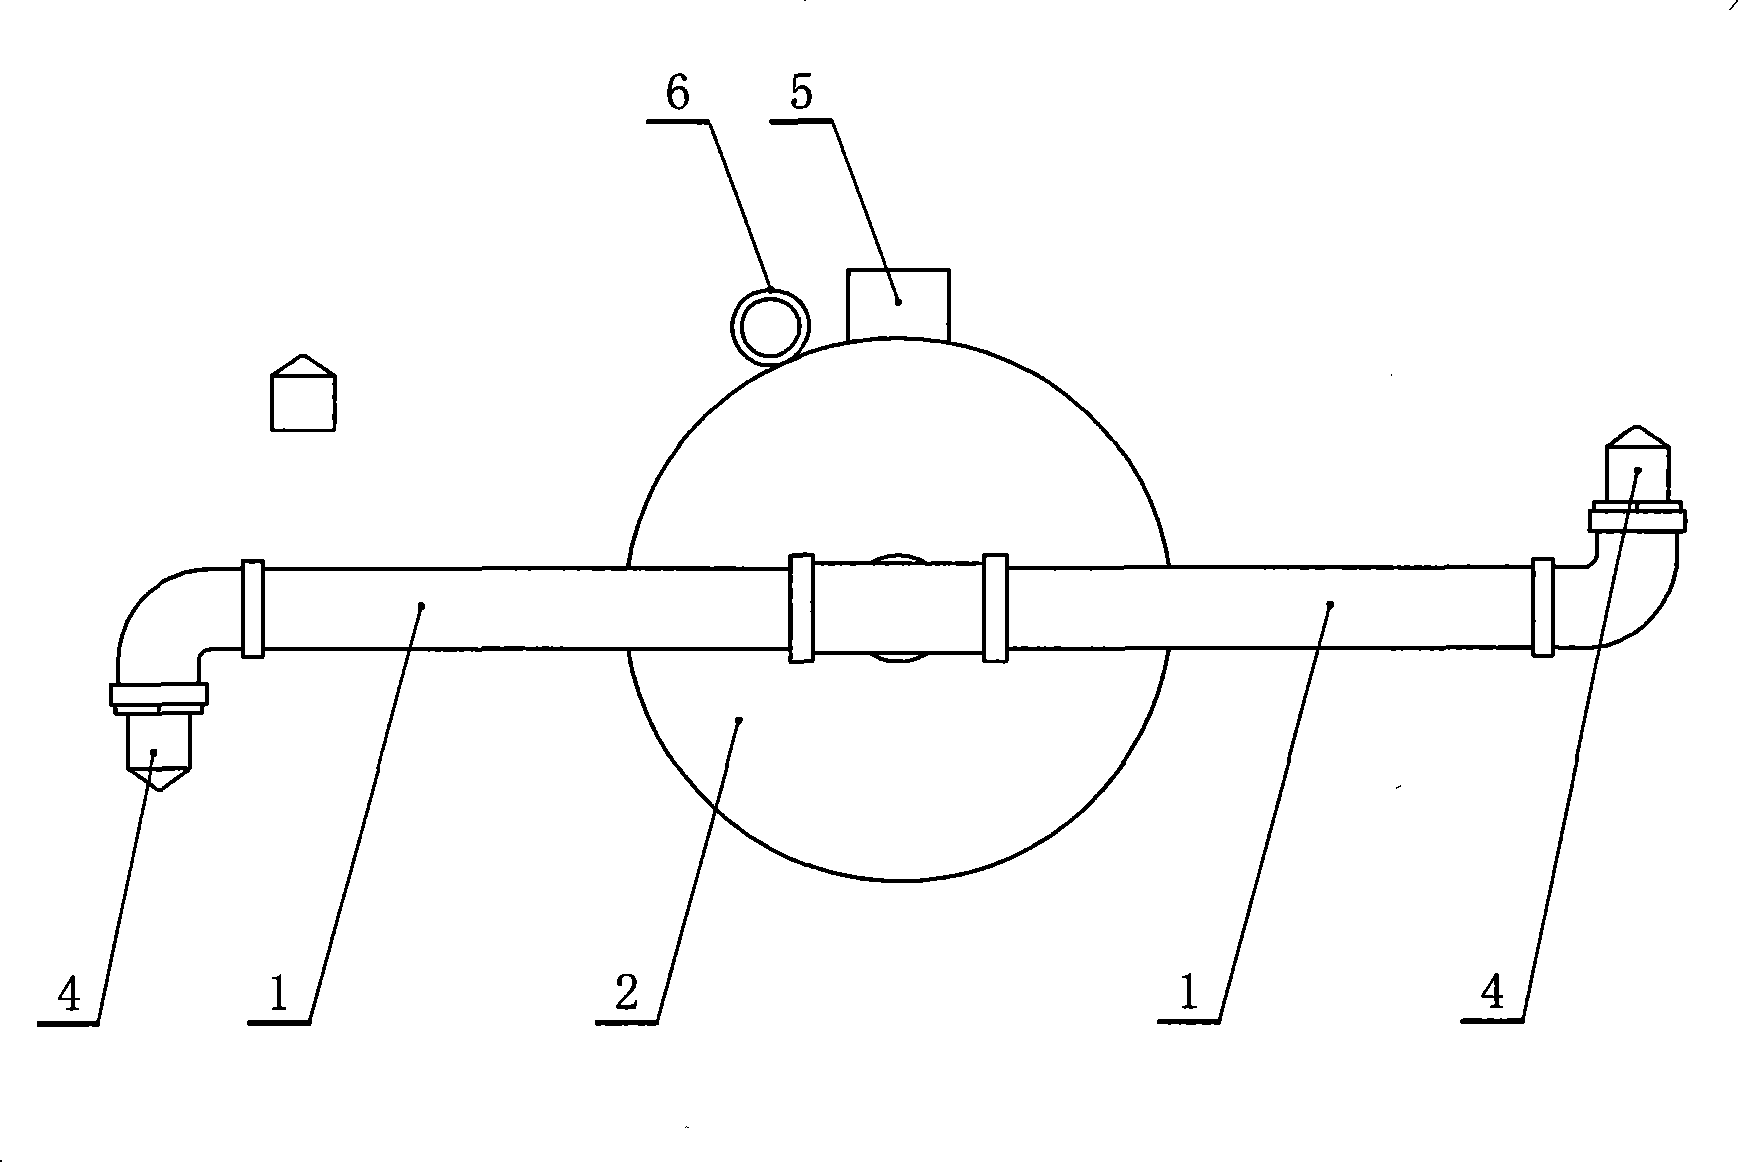 Spin type atomizer